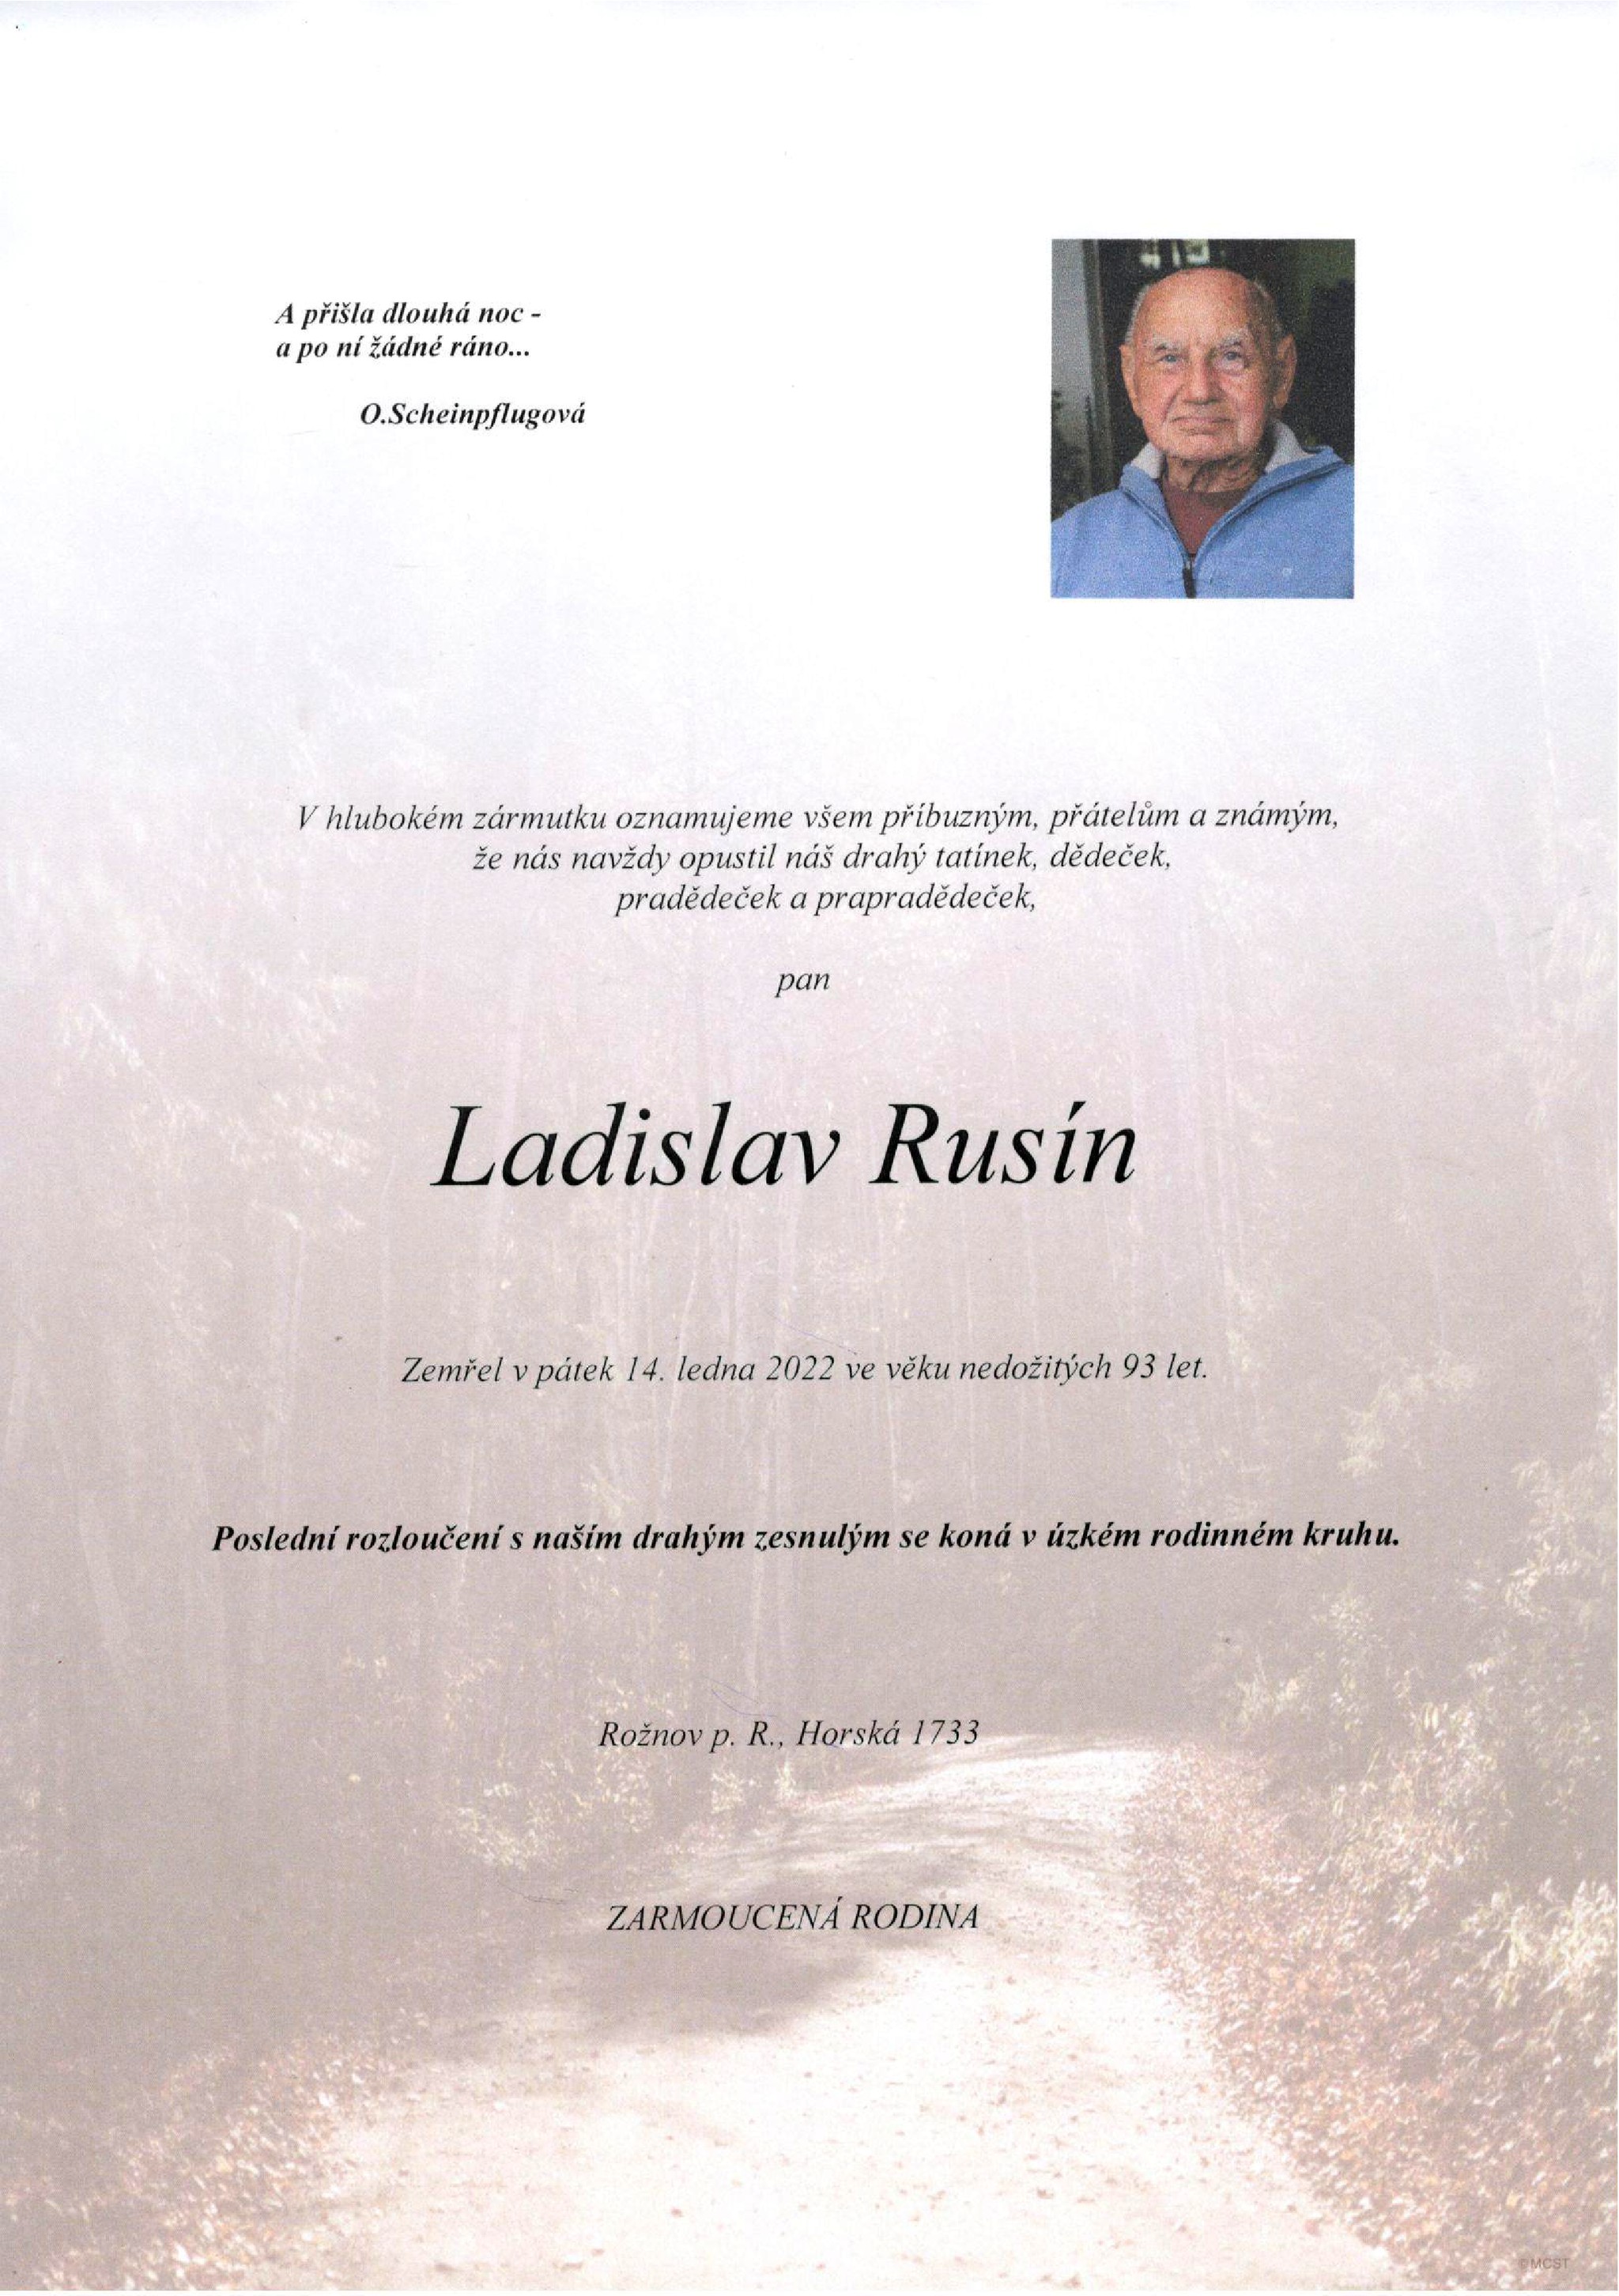 Ladislav Rusín